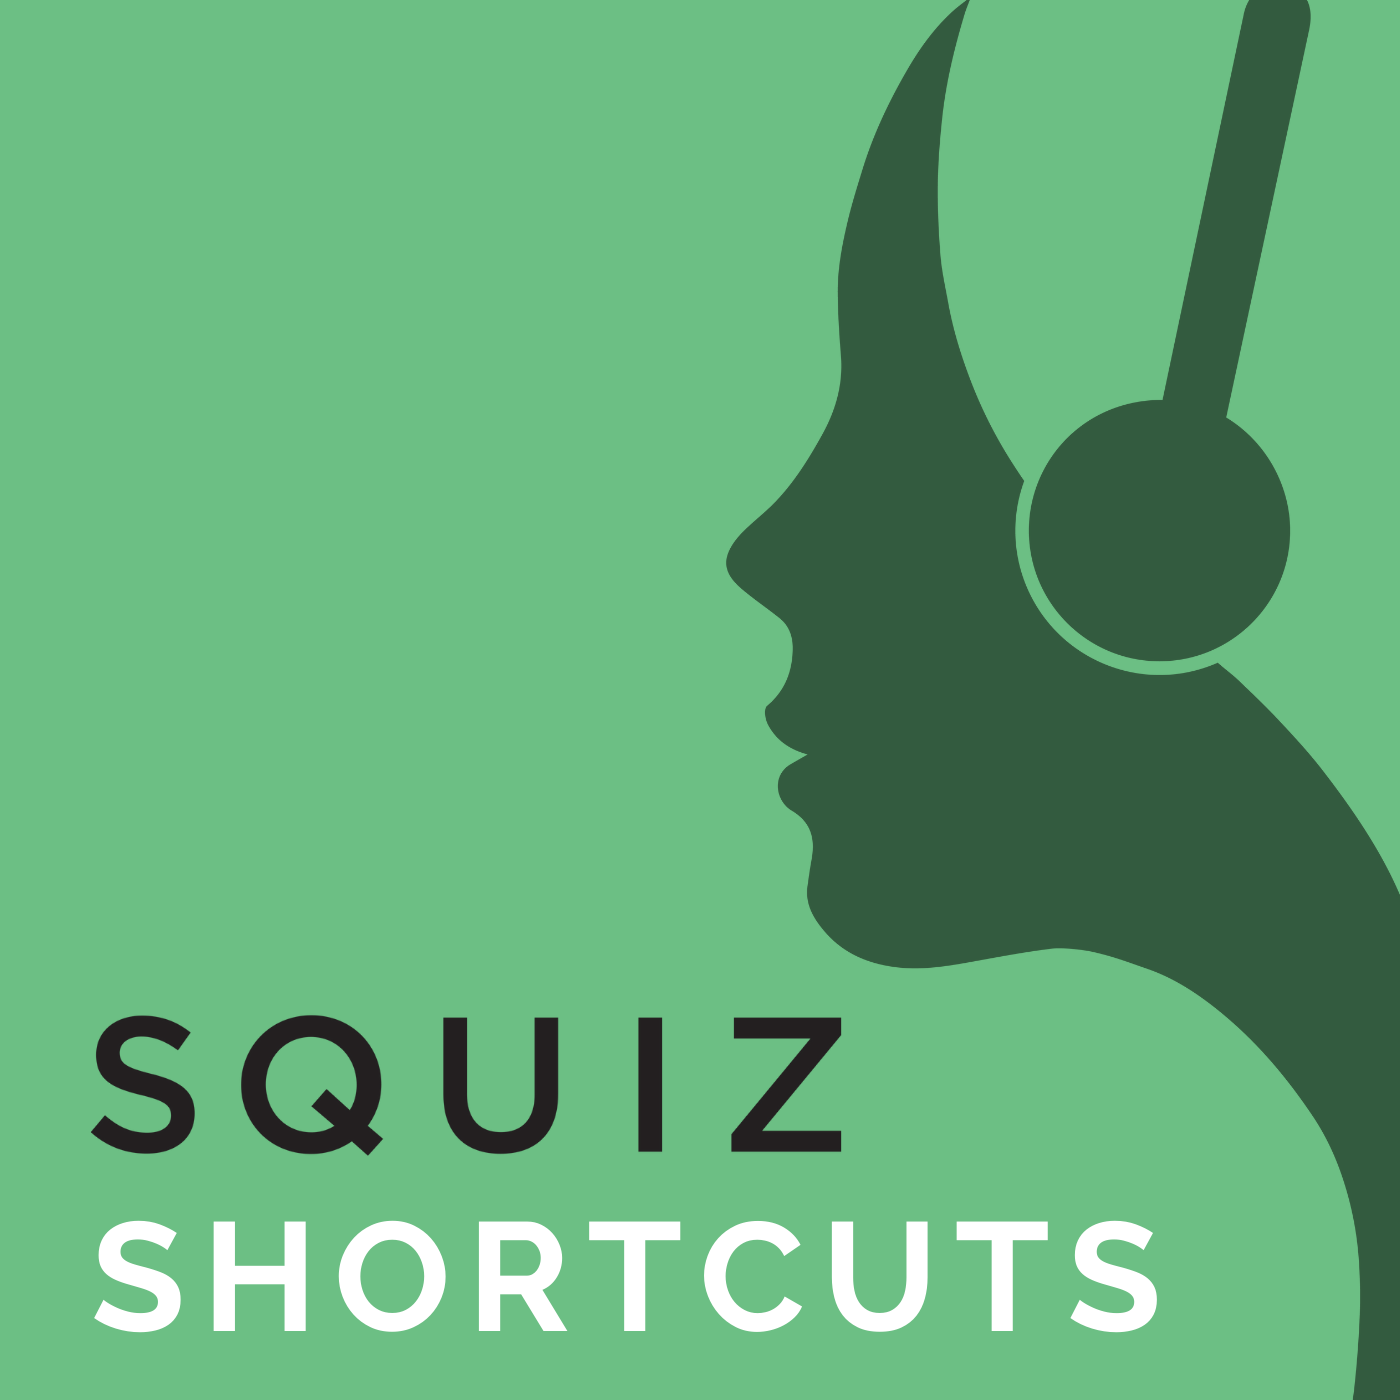 Squiz Shortcuts Podcast Tile